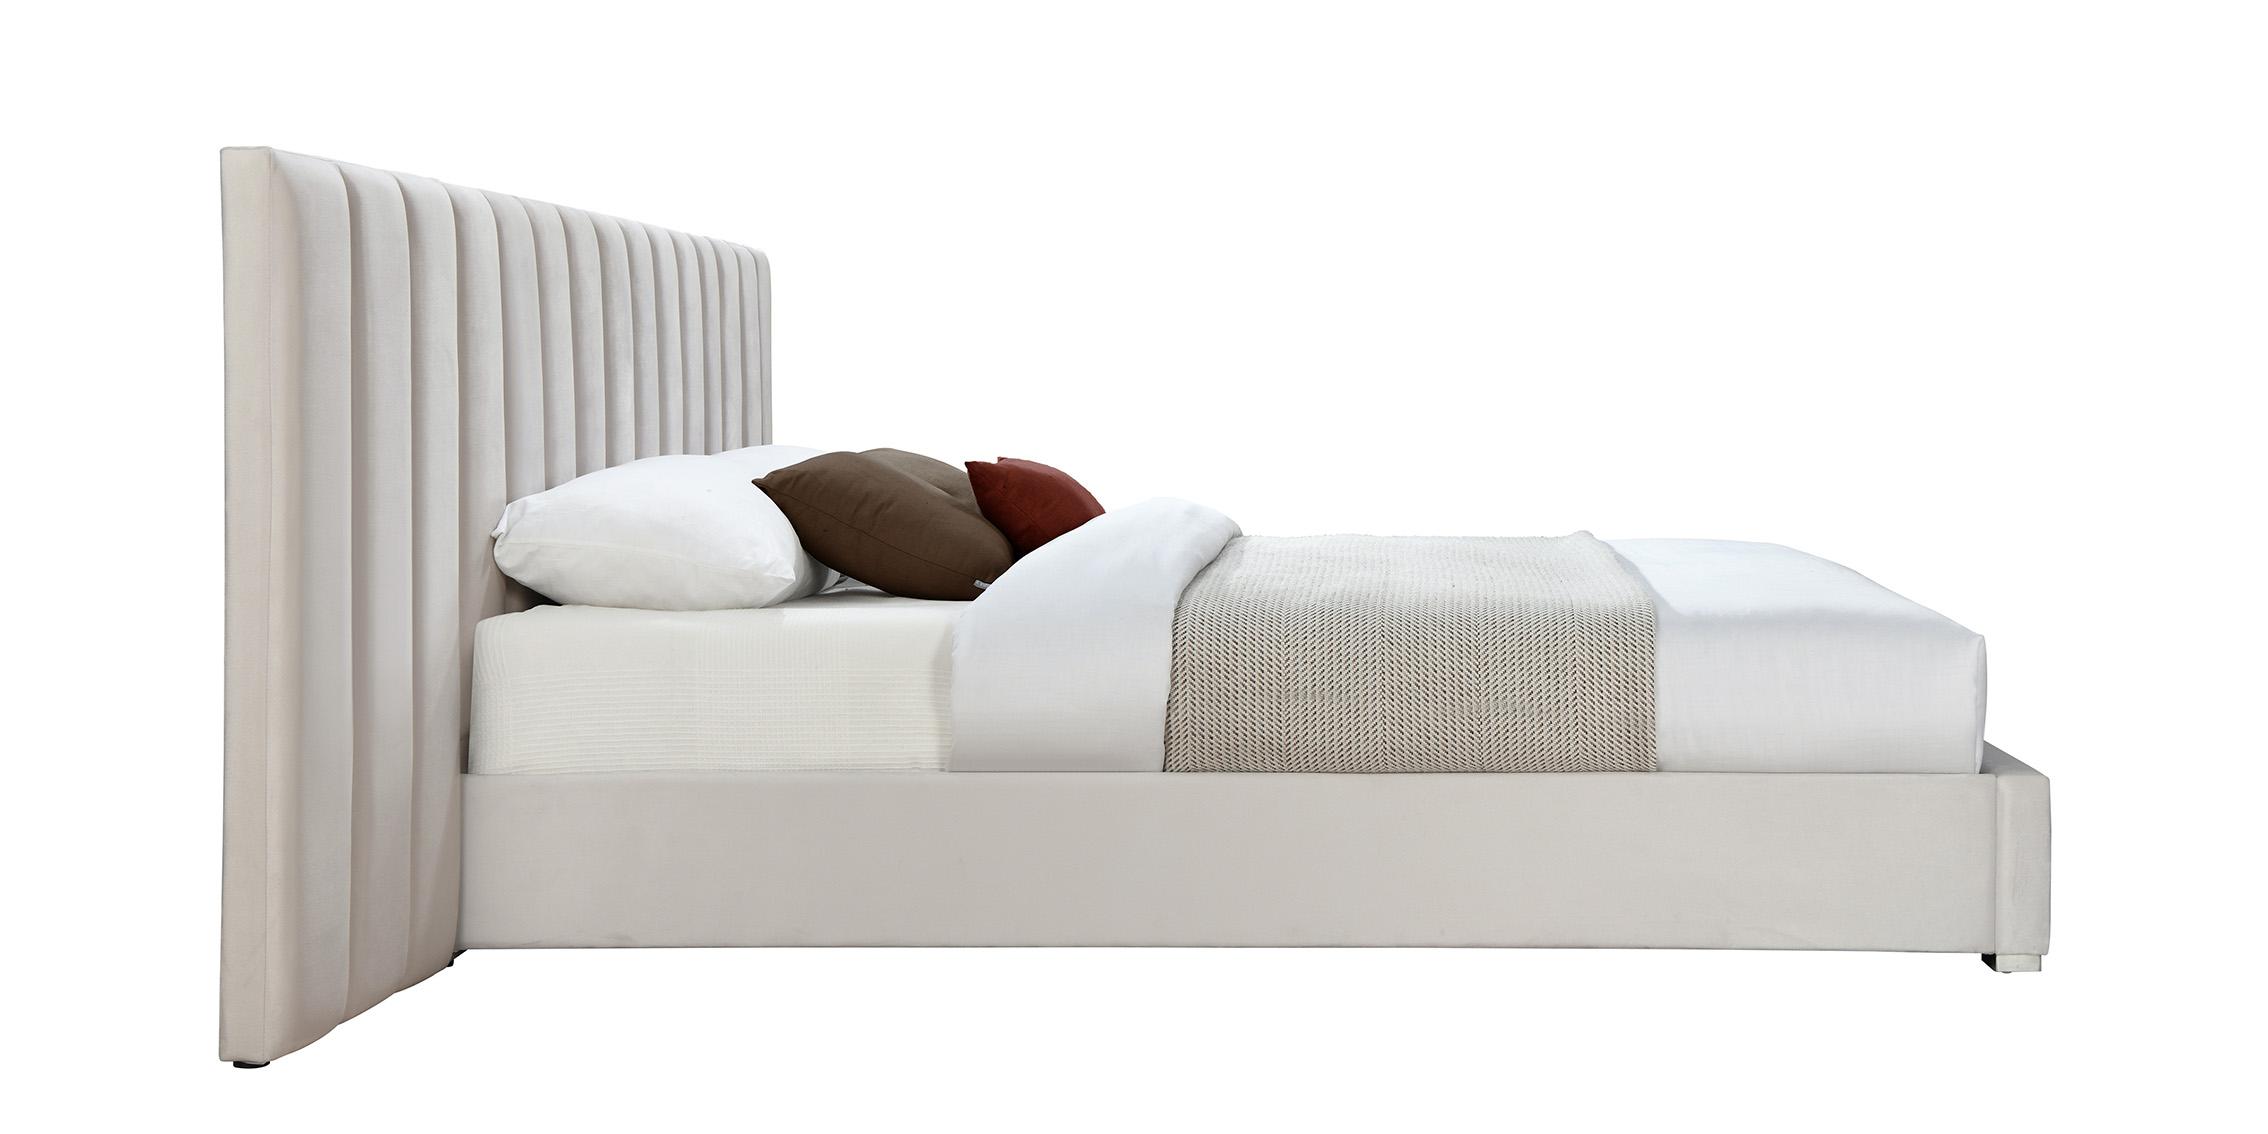 

    
PabloCream-K Meridian Furniture Platform Bed
